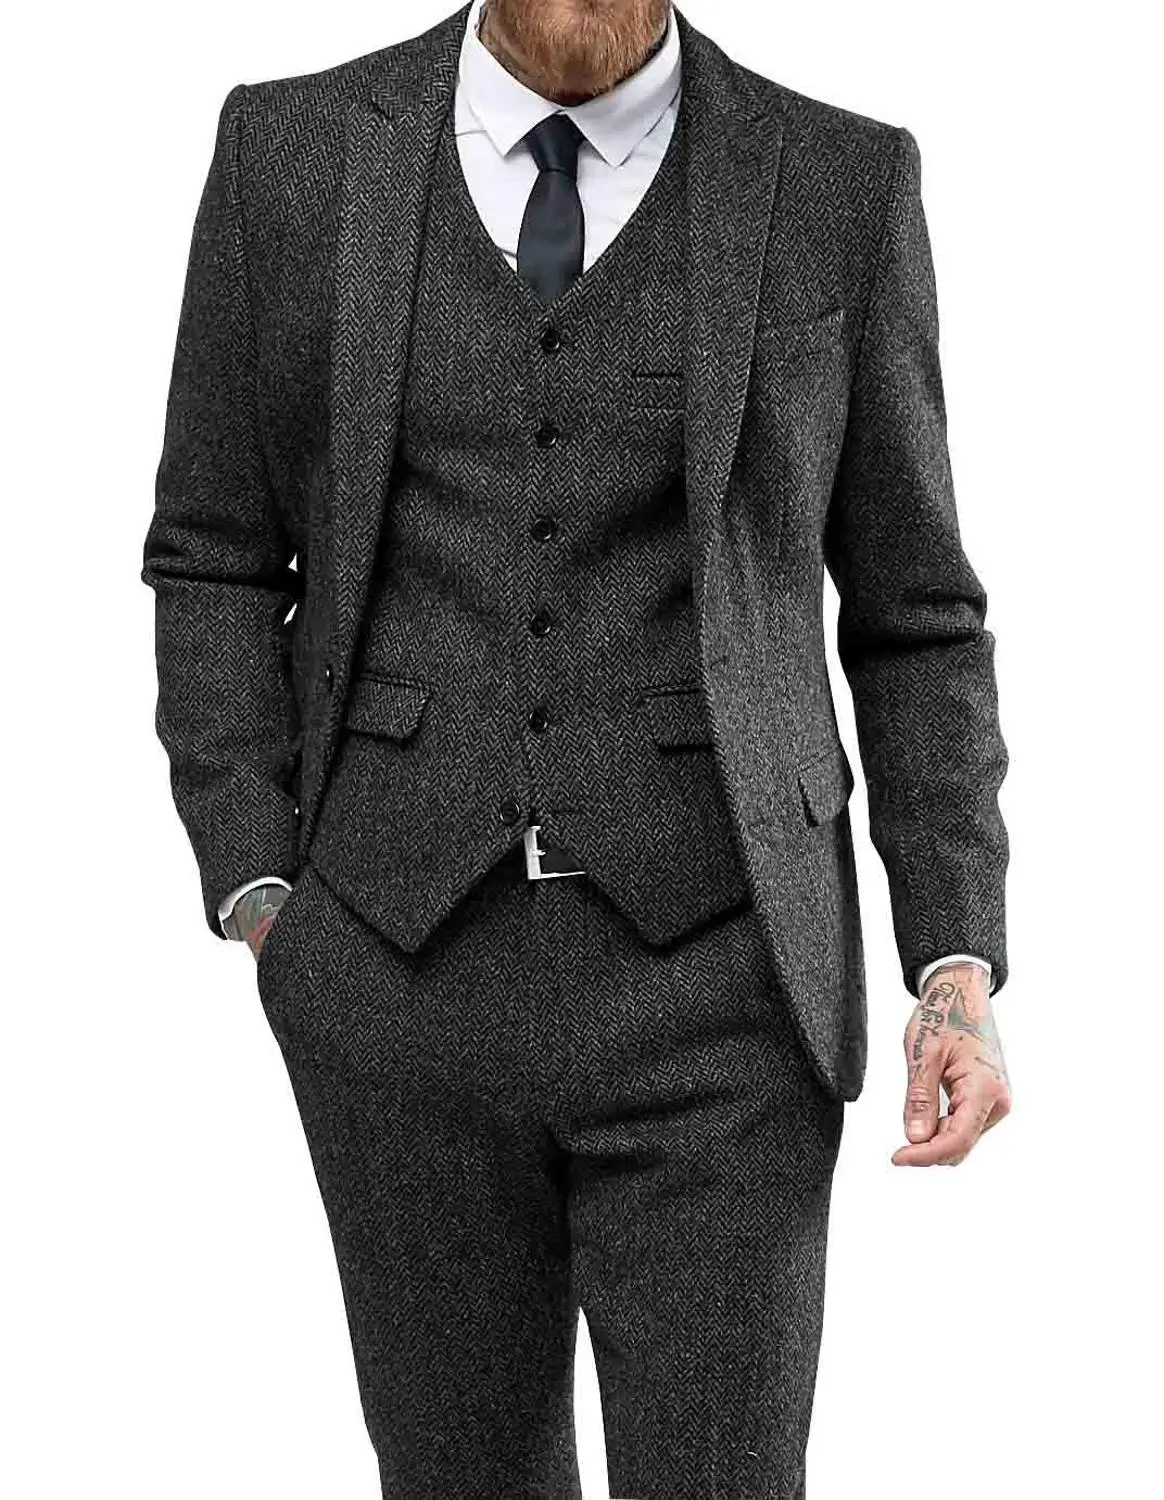 Мужской костюм, повседневный деловой костюм из трех предметов для женихов, серый, белый, бордовый смокинг с лацканами для свадьбы, блейзер+ брюки+ жилет - Цвет: Black 3 pieces